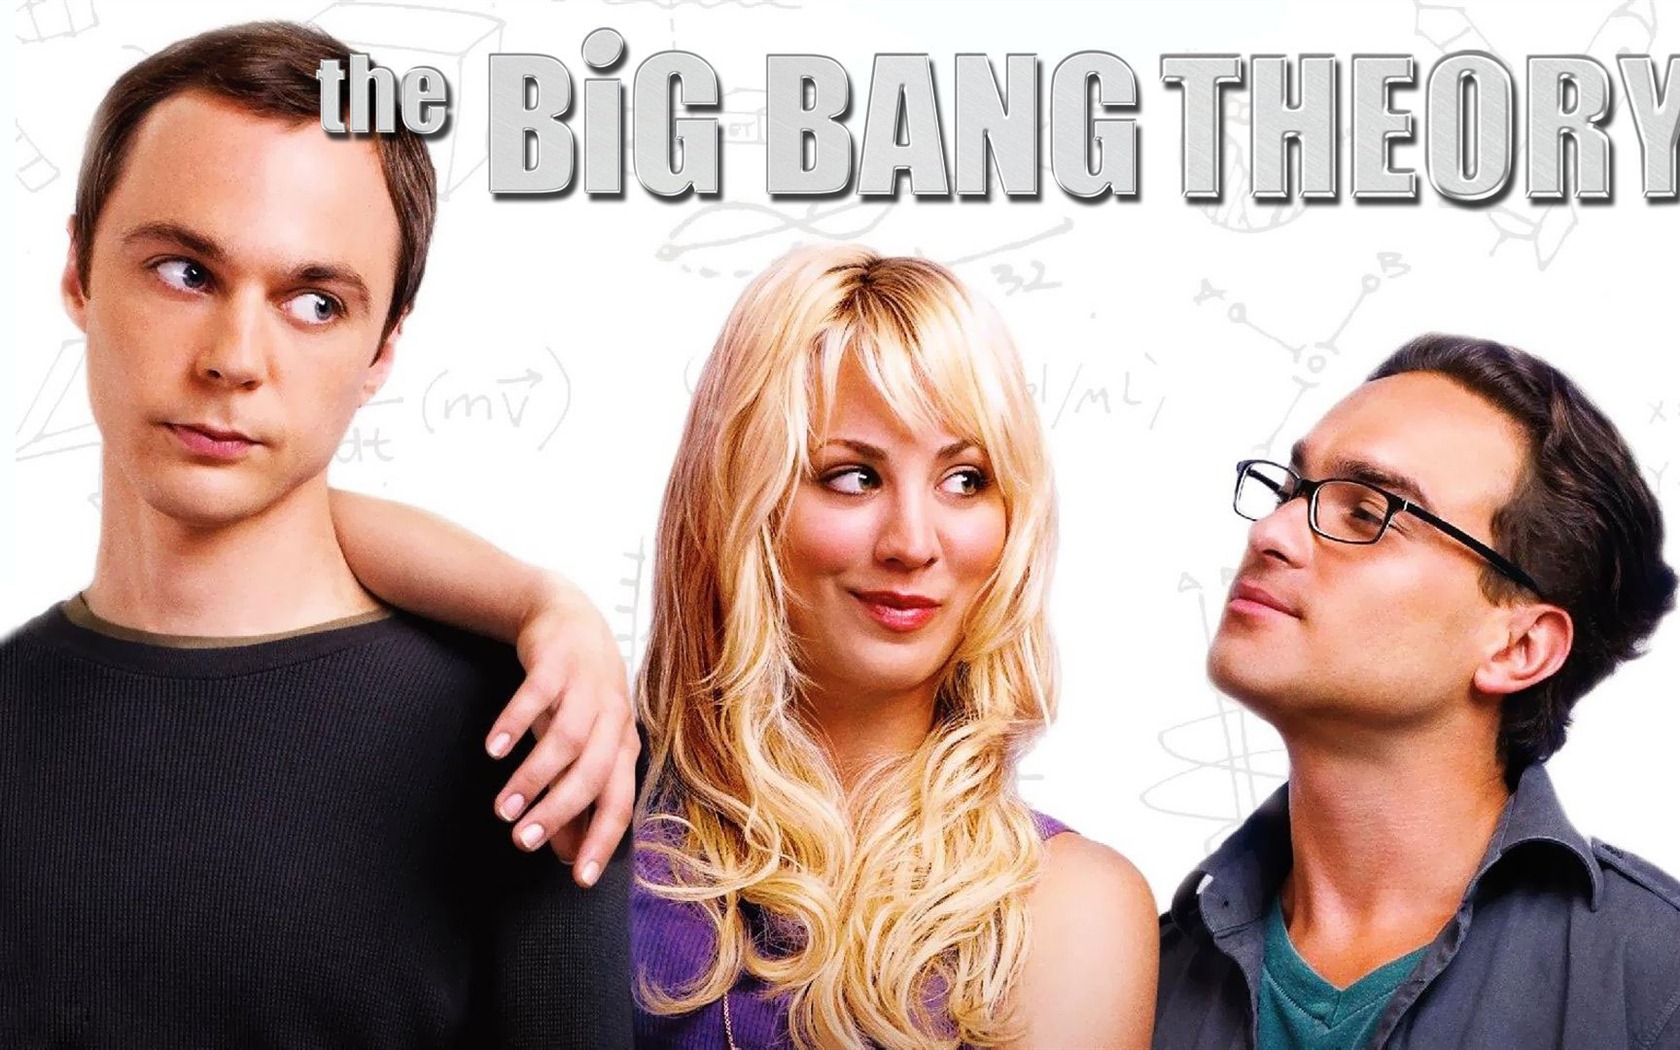 The Big Bang Theory 生活大爆炸 电视剧高清壁纸21 - 1680x1050